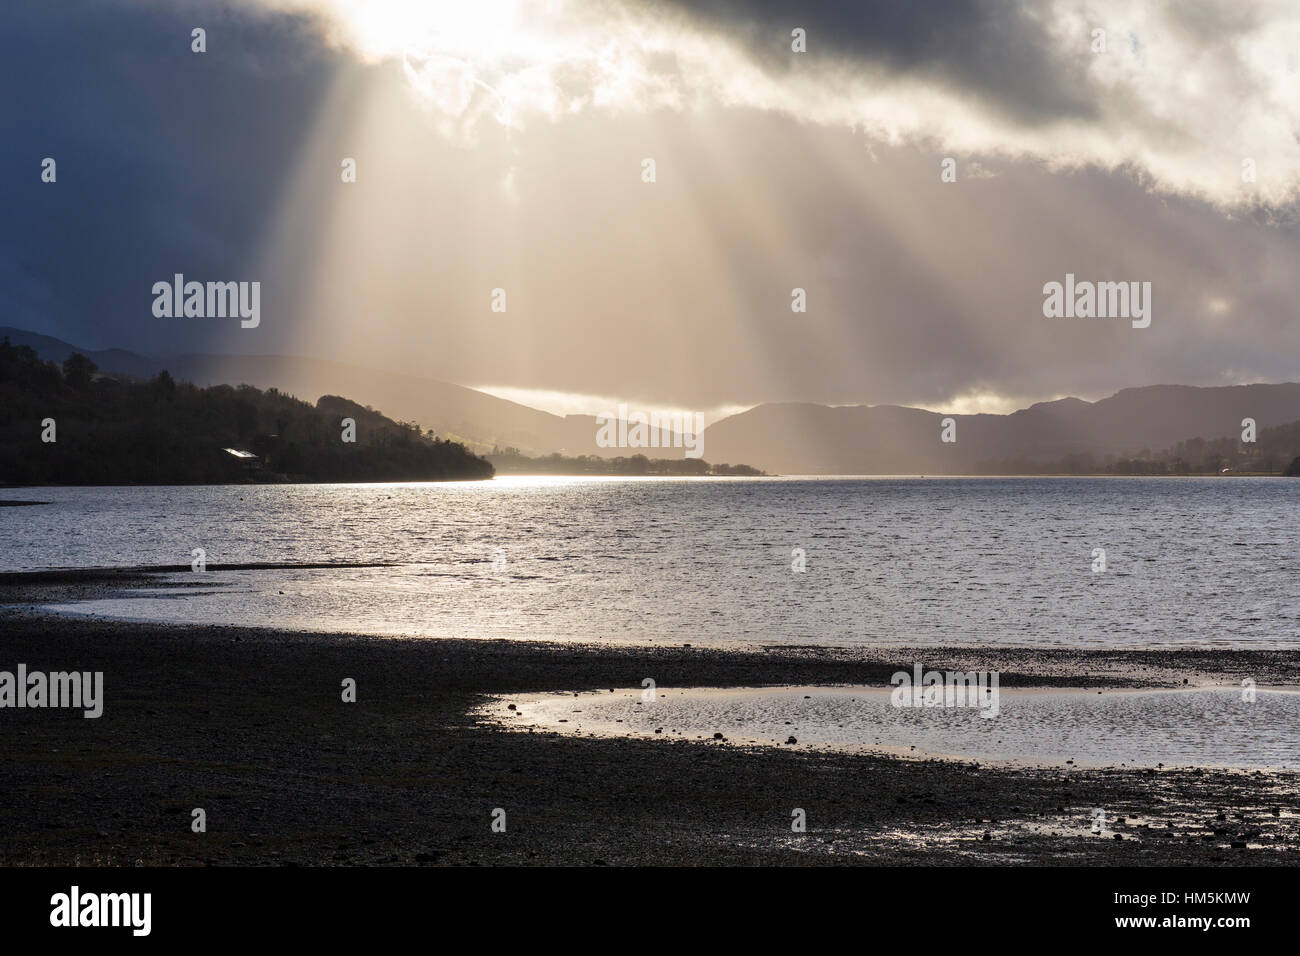 Lake Bala, also known as Llyn Tegid in Gwynedd, Wales. Stock Photo